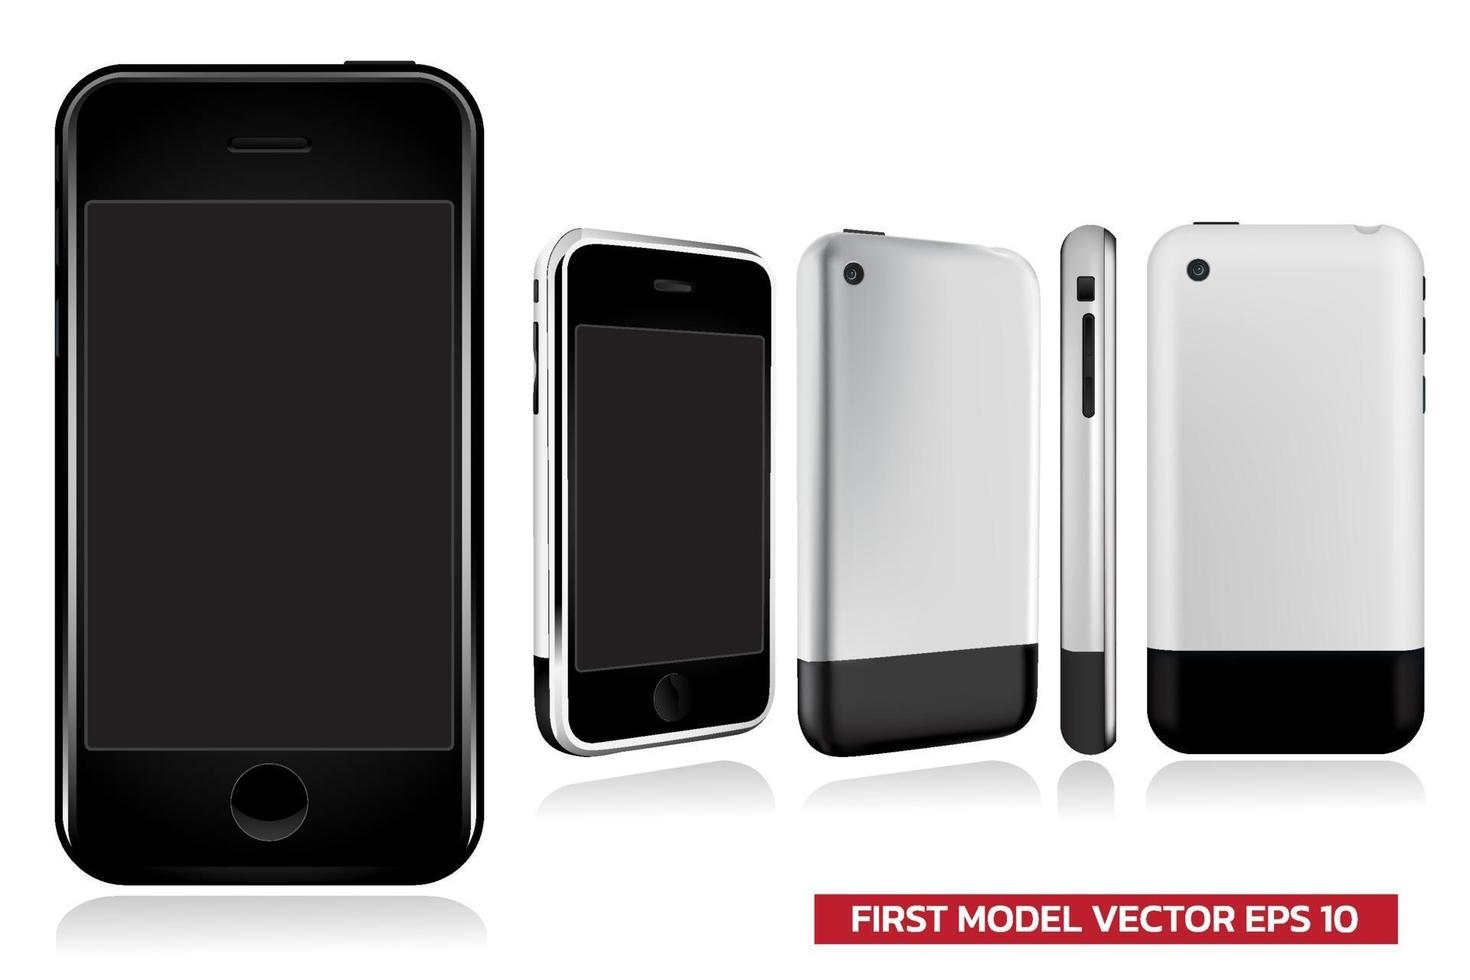 première génération de modèle de smartphone en vue différente avant, côté, arrière, maquette illustration vectorielle réaliste sur fond blanc. vecteur